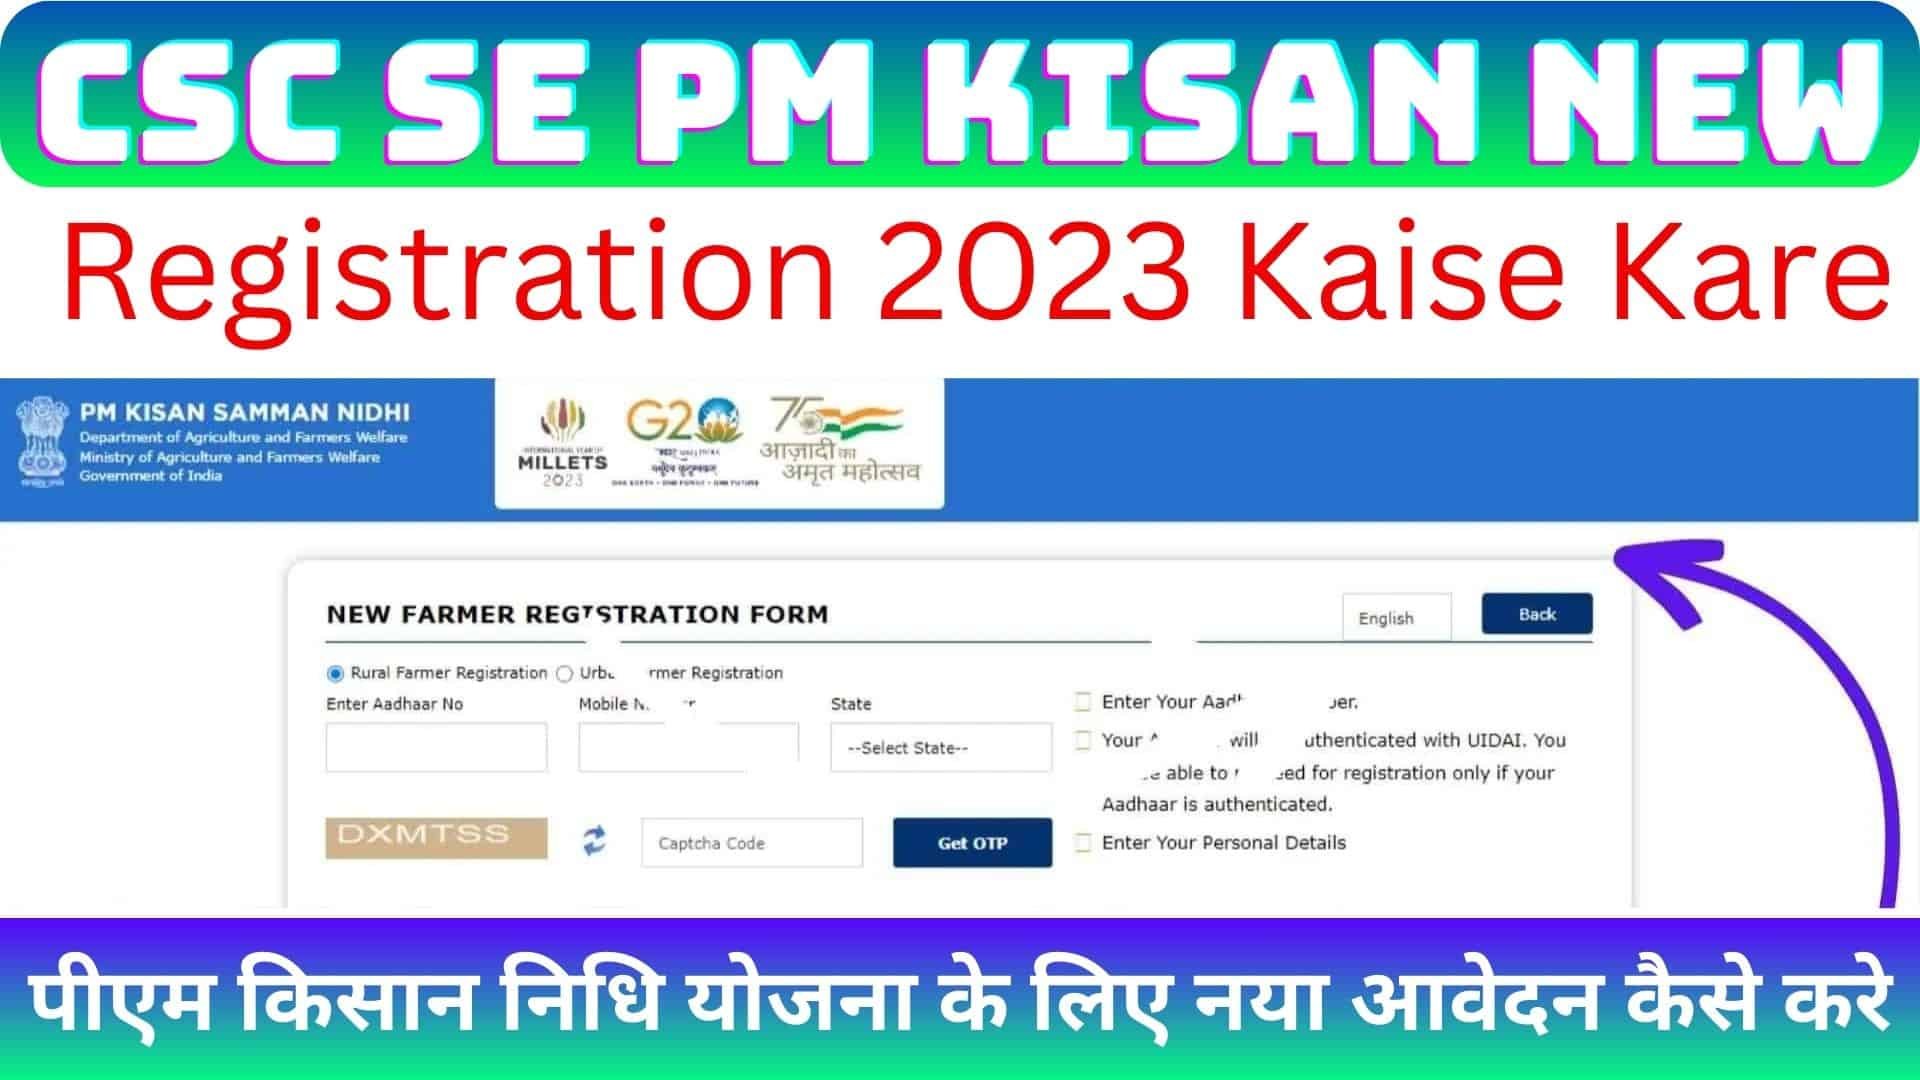 CSC Se PM Kisan New Registration 2023 Kaise Kare : पीएम किसान निधि योजना के लिए नया आवेदन कैसे करे